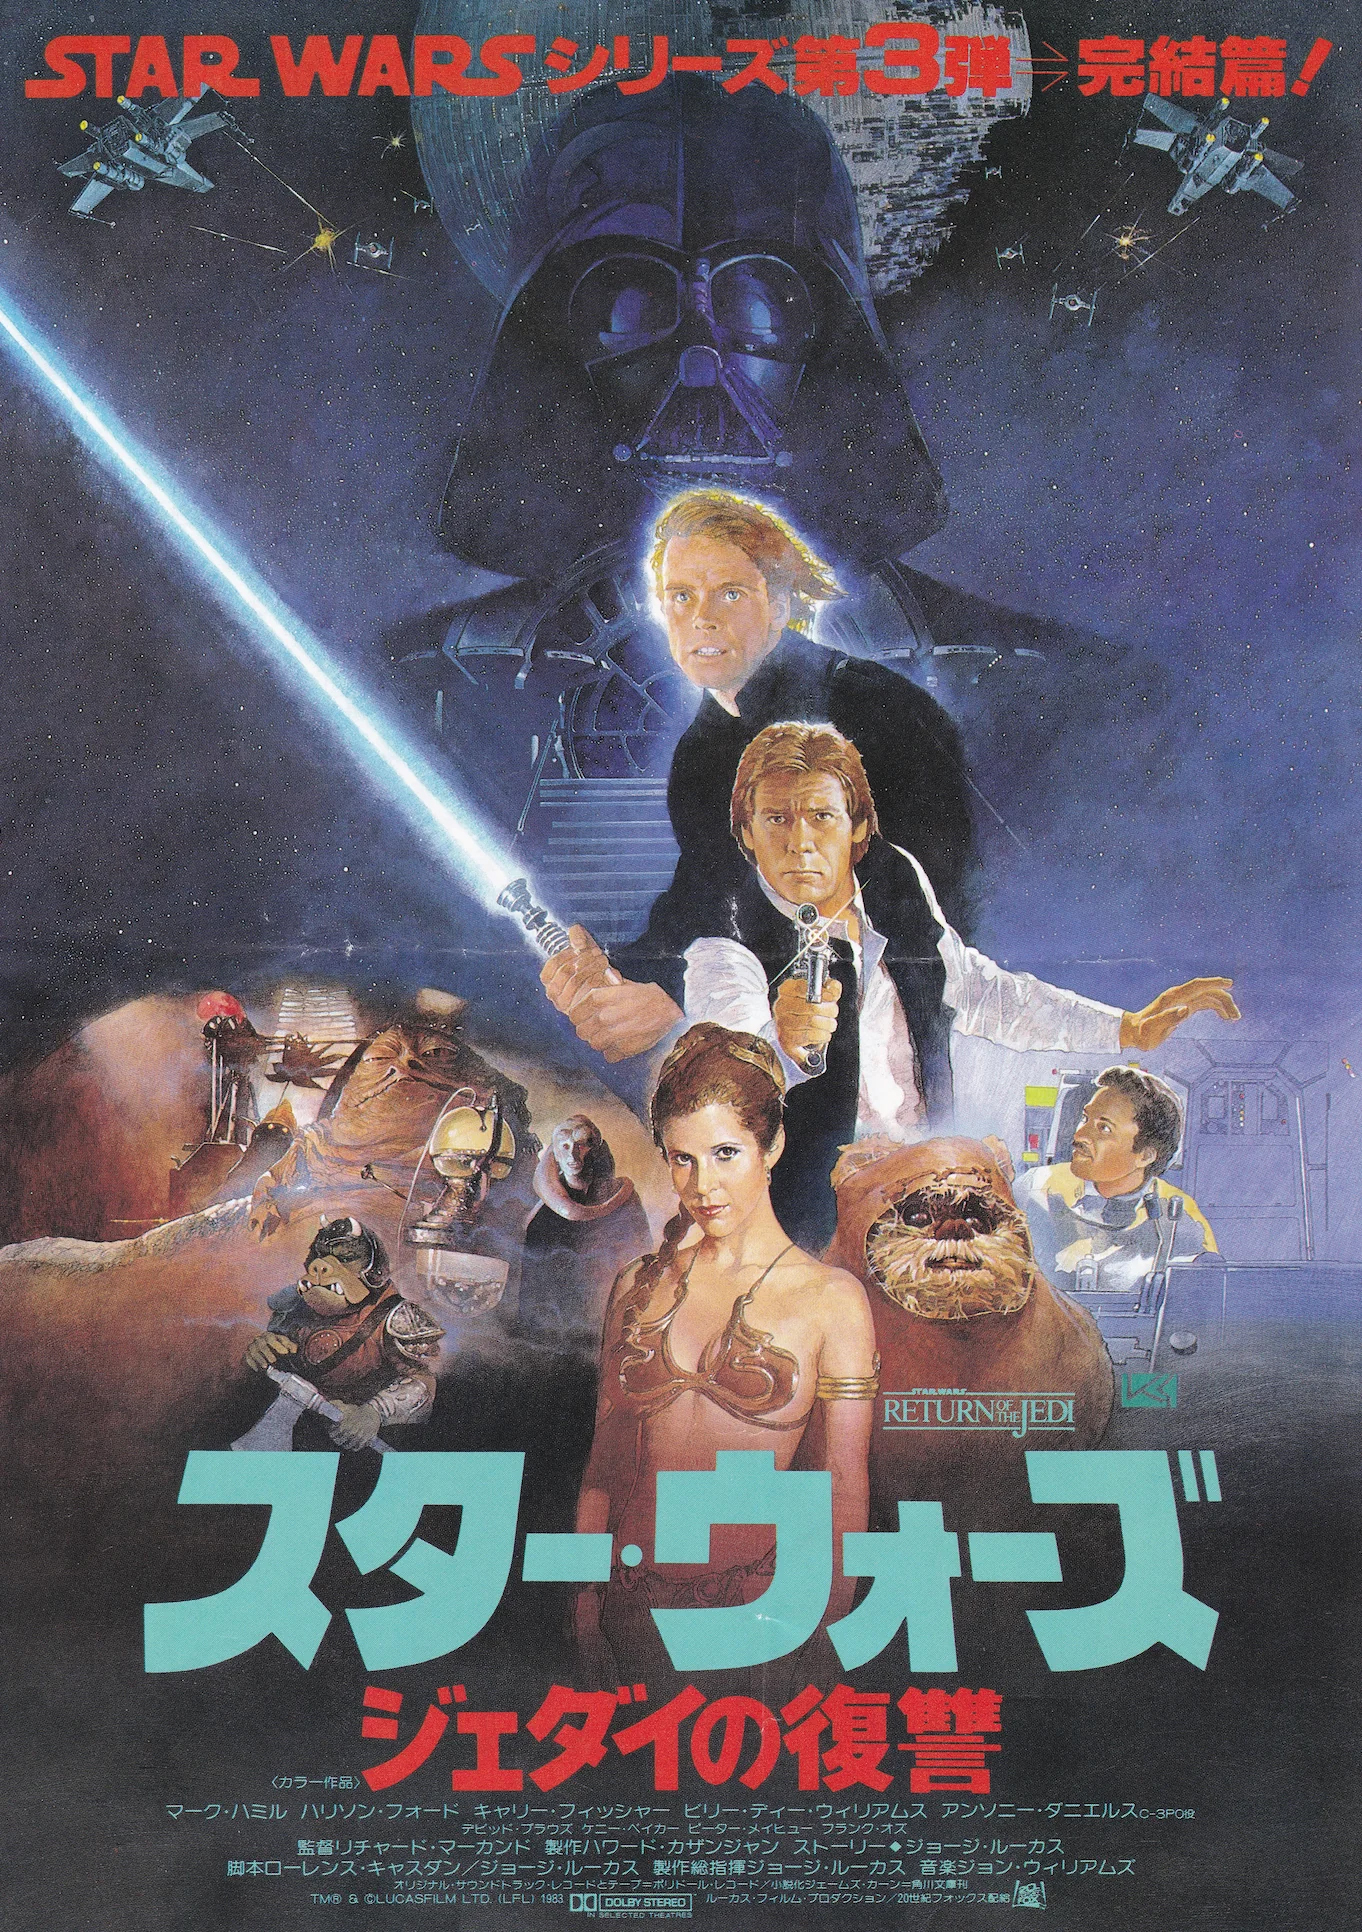 General 1362x1932 Star Wars Luke Skywalker Darth Vader Leia Organa Japanese Art movies movie characters George Lucas